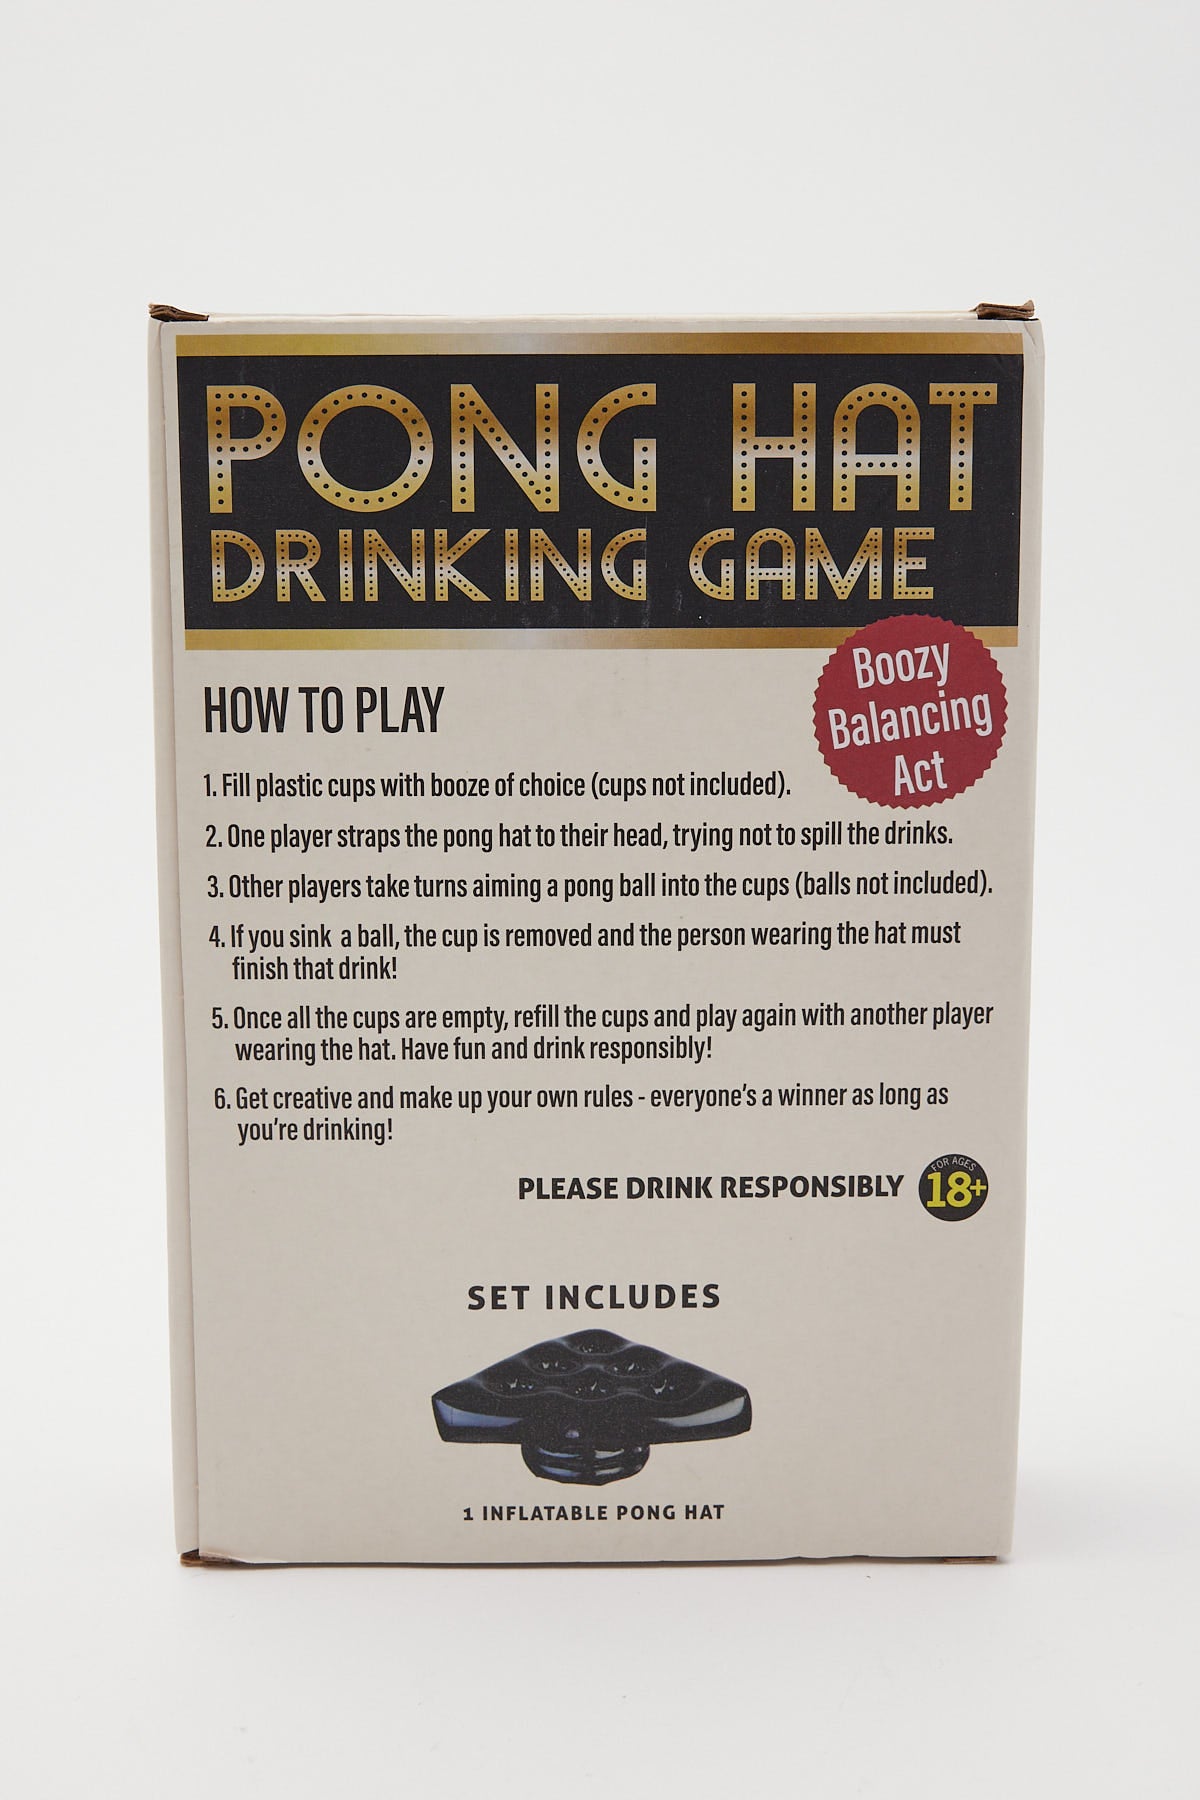 Mdi Drinking Game Pong Hat